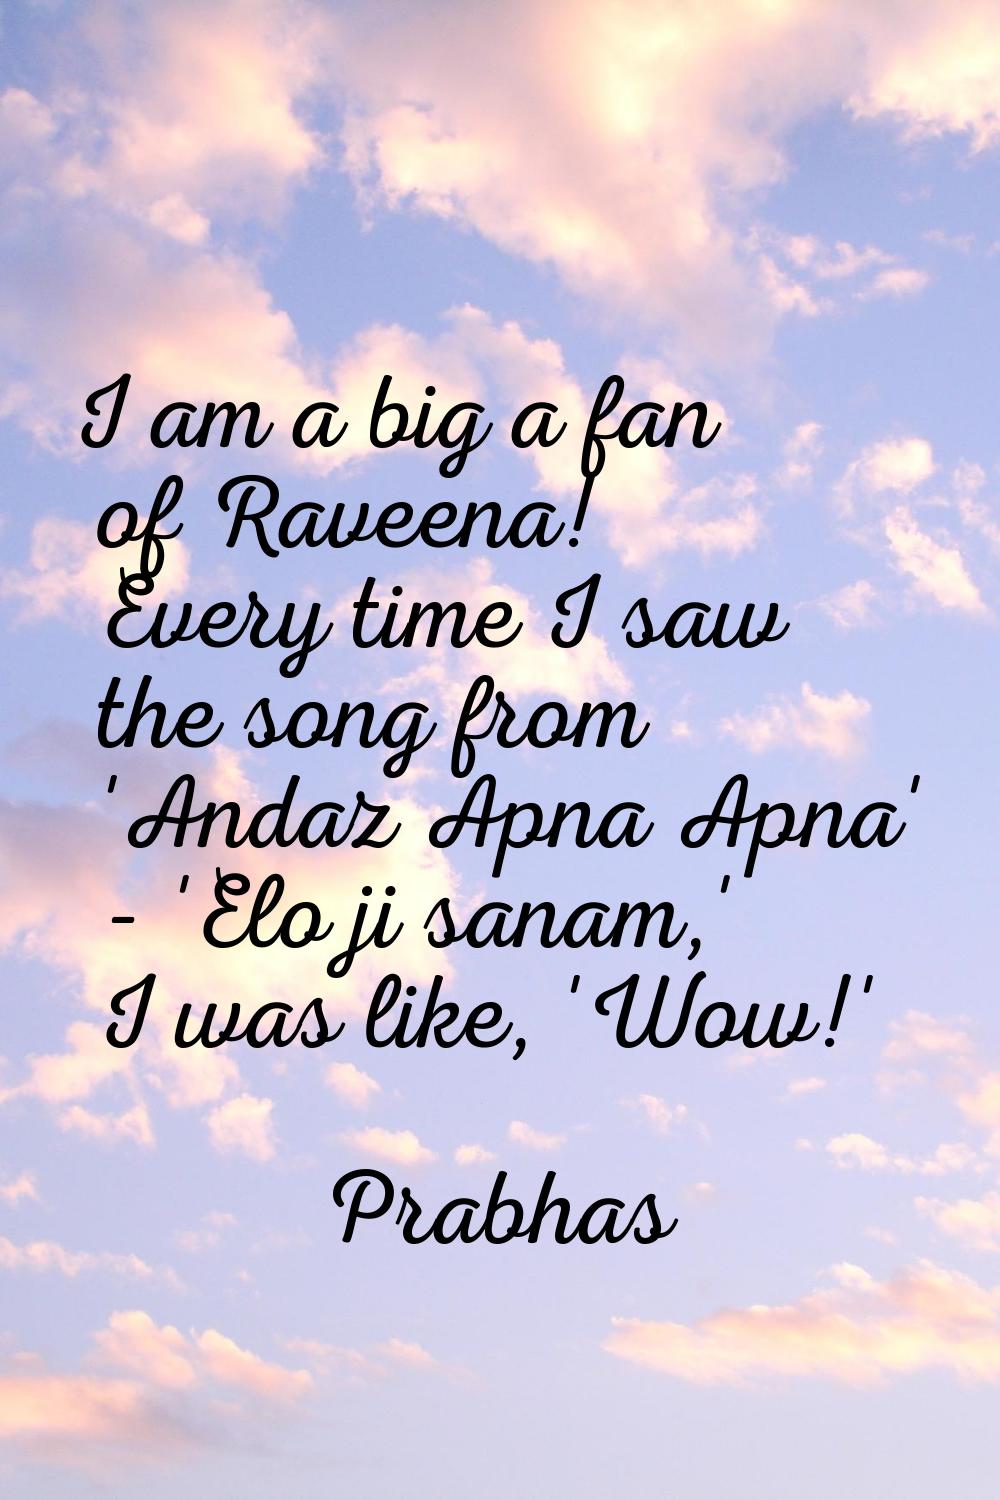 I am a big a fan of Raveena! Every time I saw the song from 'Andaz Apna Apna' - 'Elo ji sanam,' I w